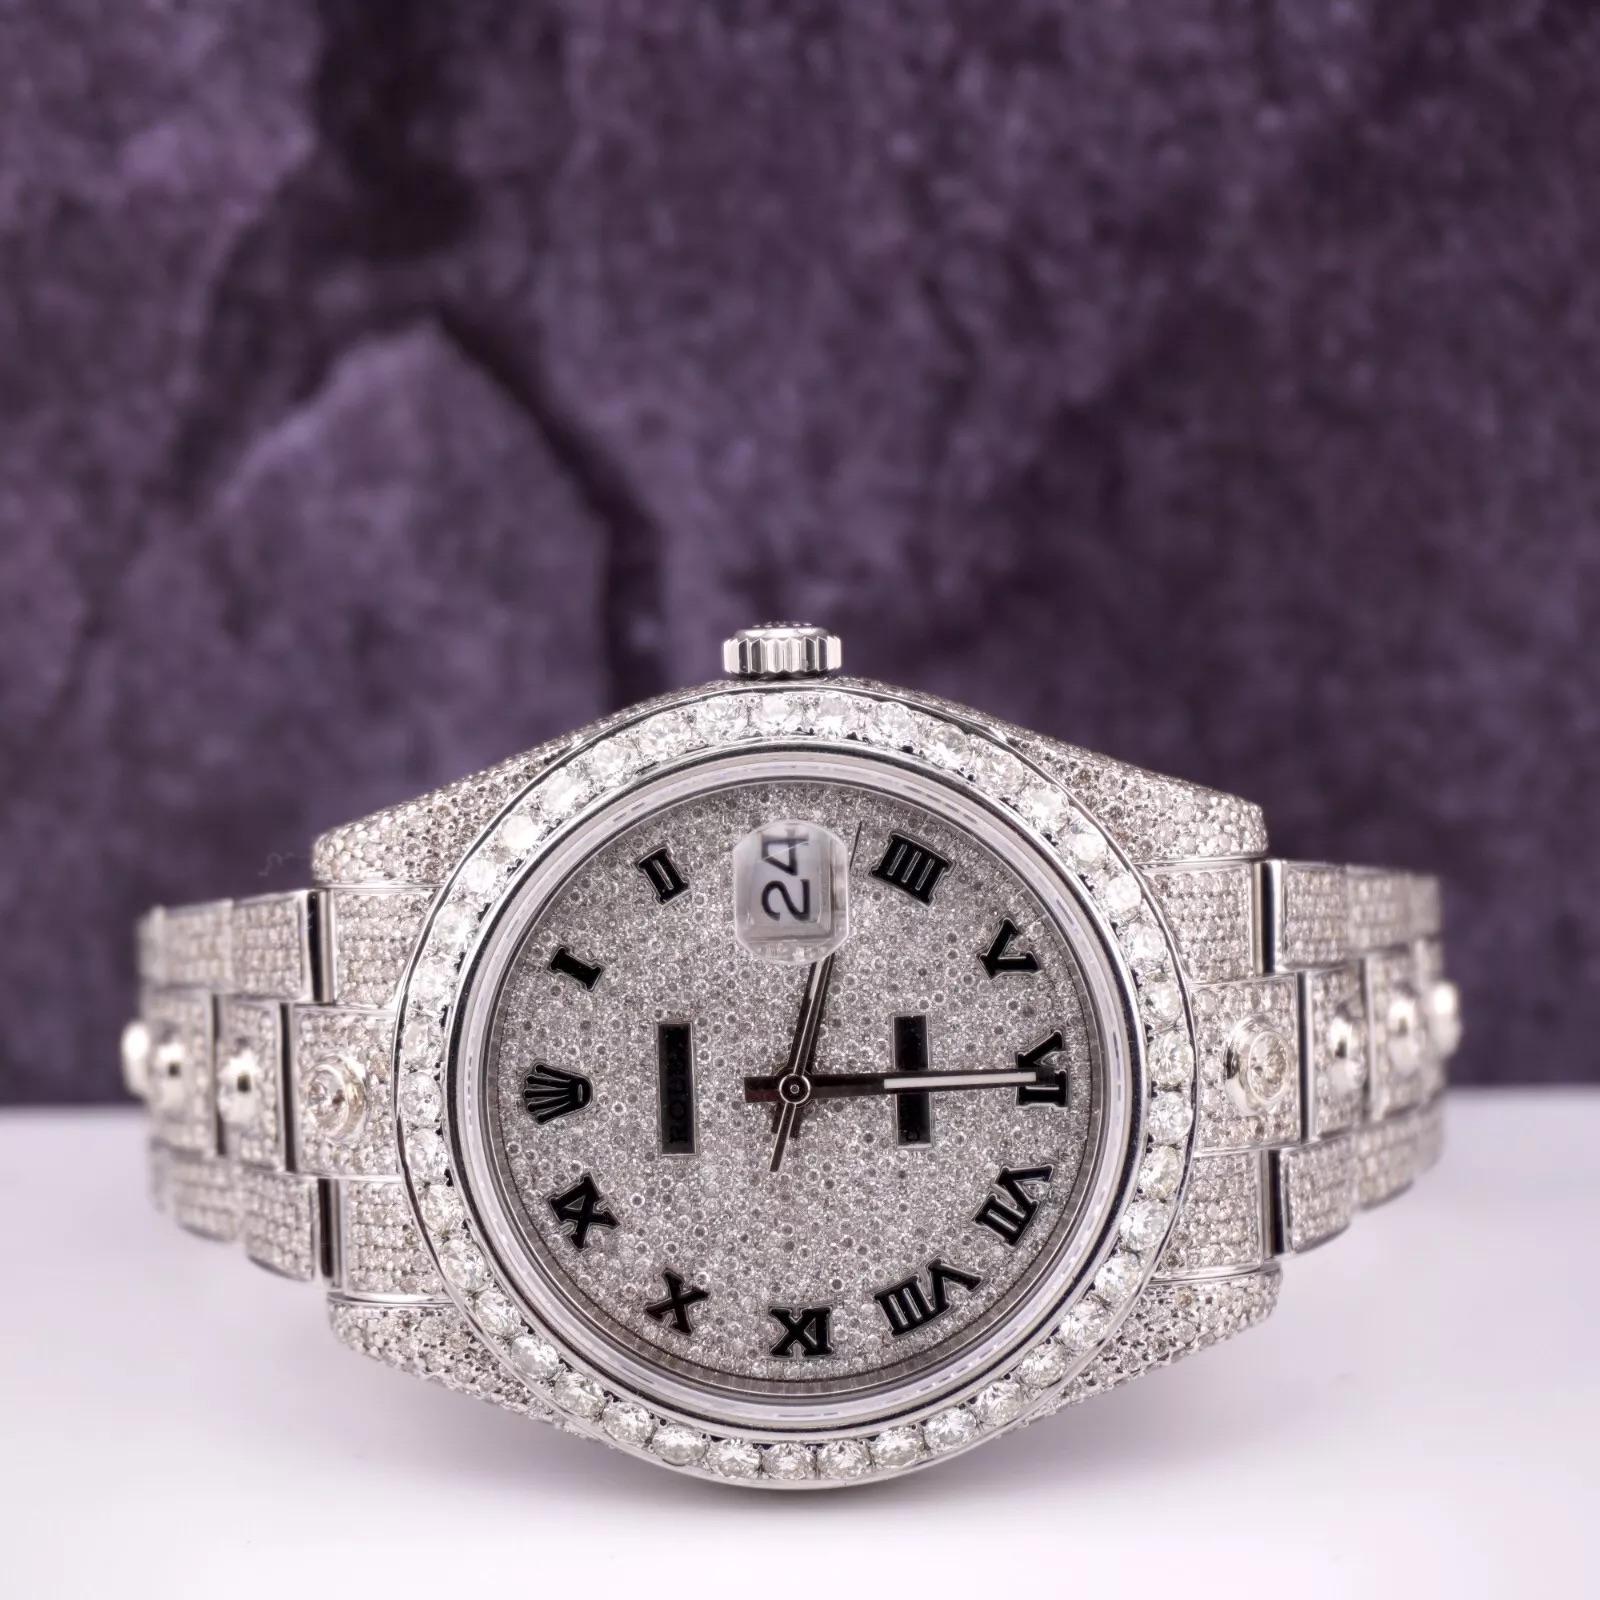 Montre Rolex Datejust 41mm personnalisée avec 18.00 carats de diamants véritables ! L'ensemble de la montre est d'origine, seuls la lunette et le cadran en diamants ont été ajoutés. L'ensemble de la lunette, du cadran, du boîtier et du bracelet a